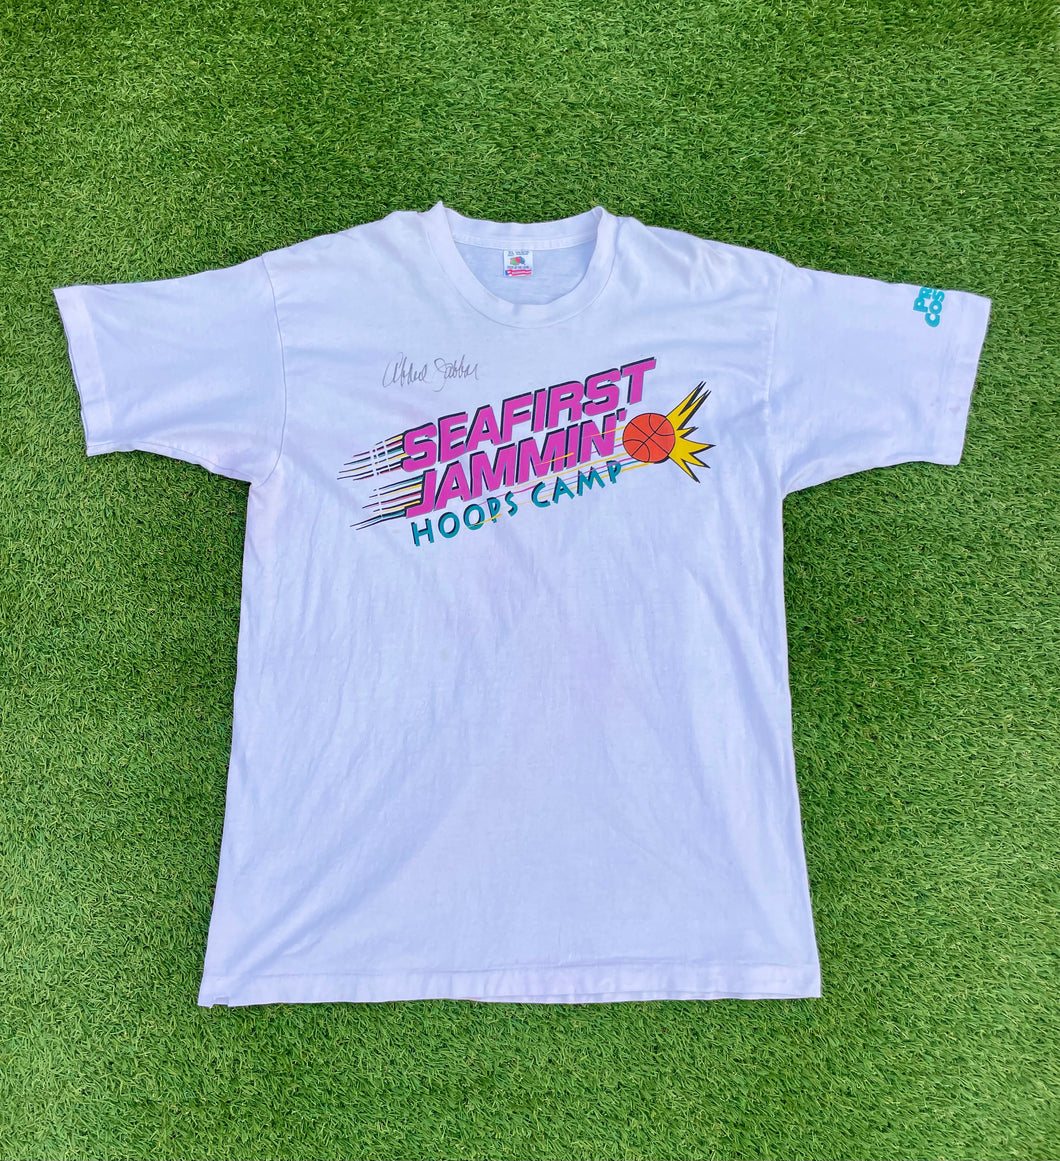 Vintage Seafirst Jammin’ Hoop Camp T Shirt